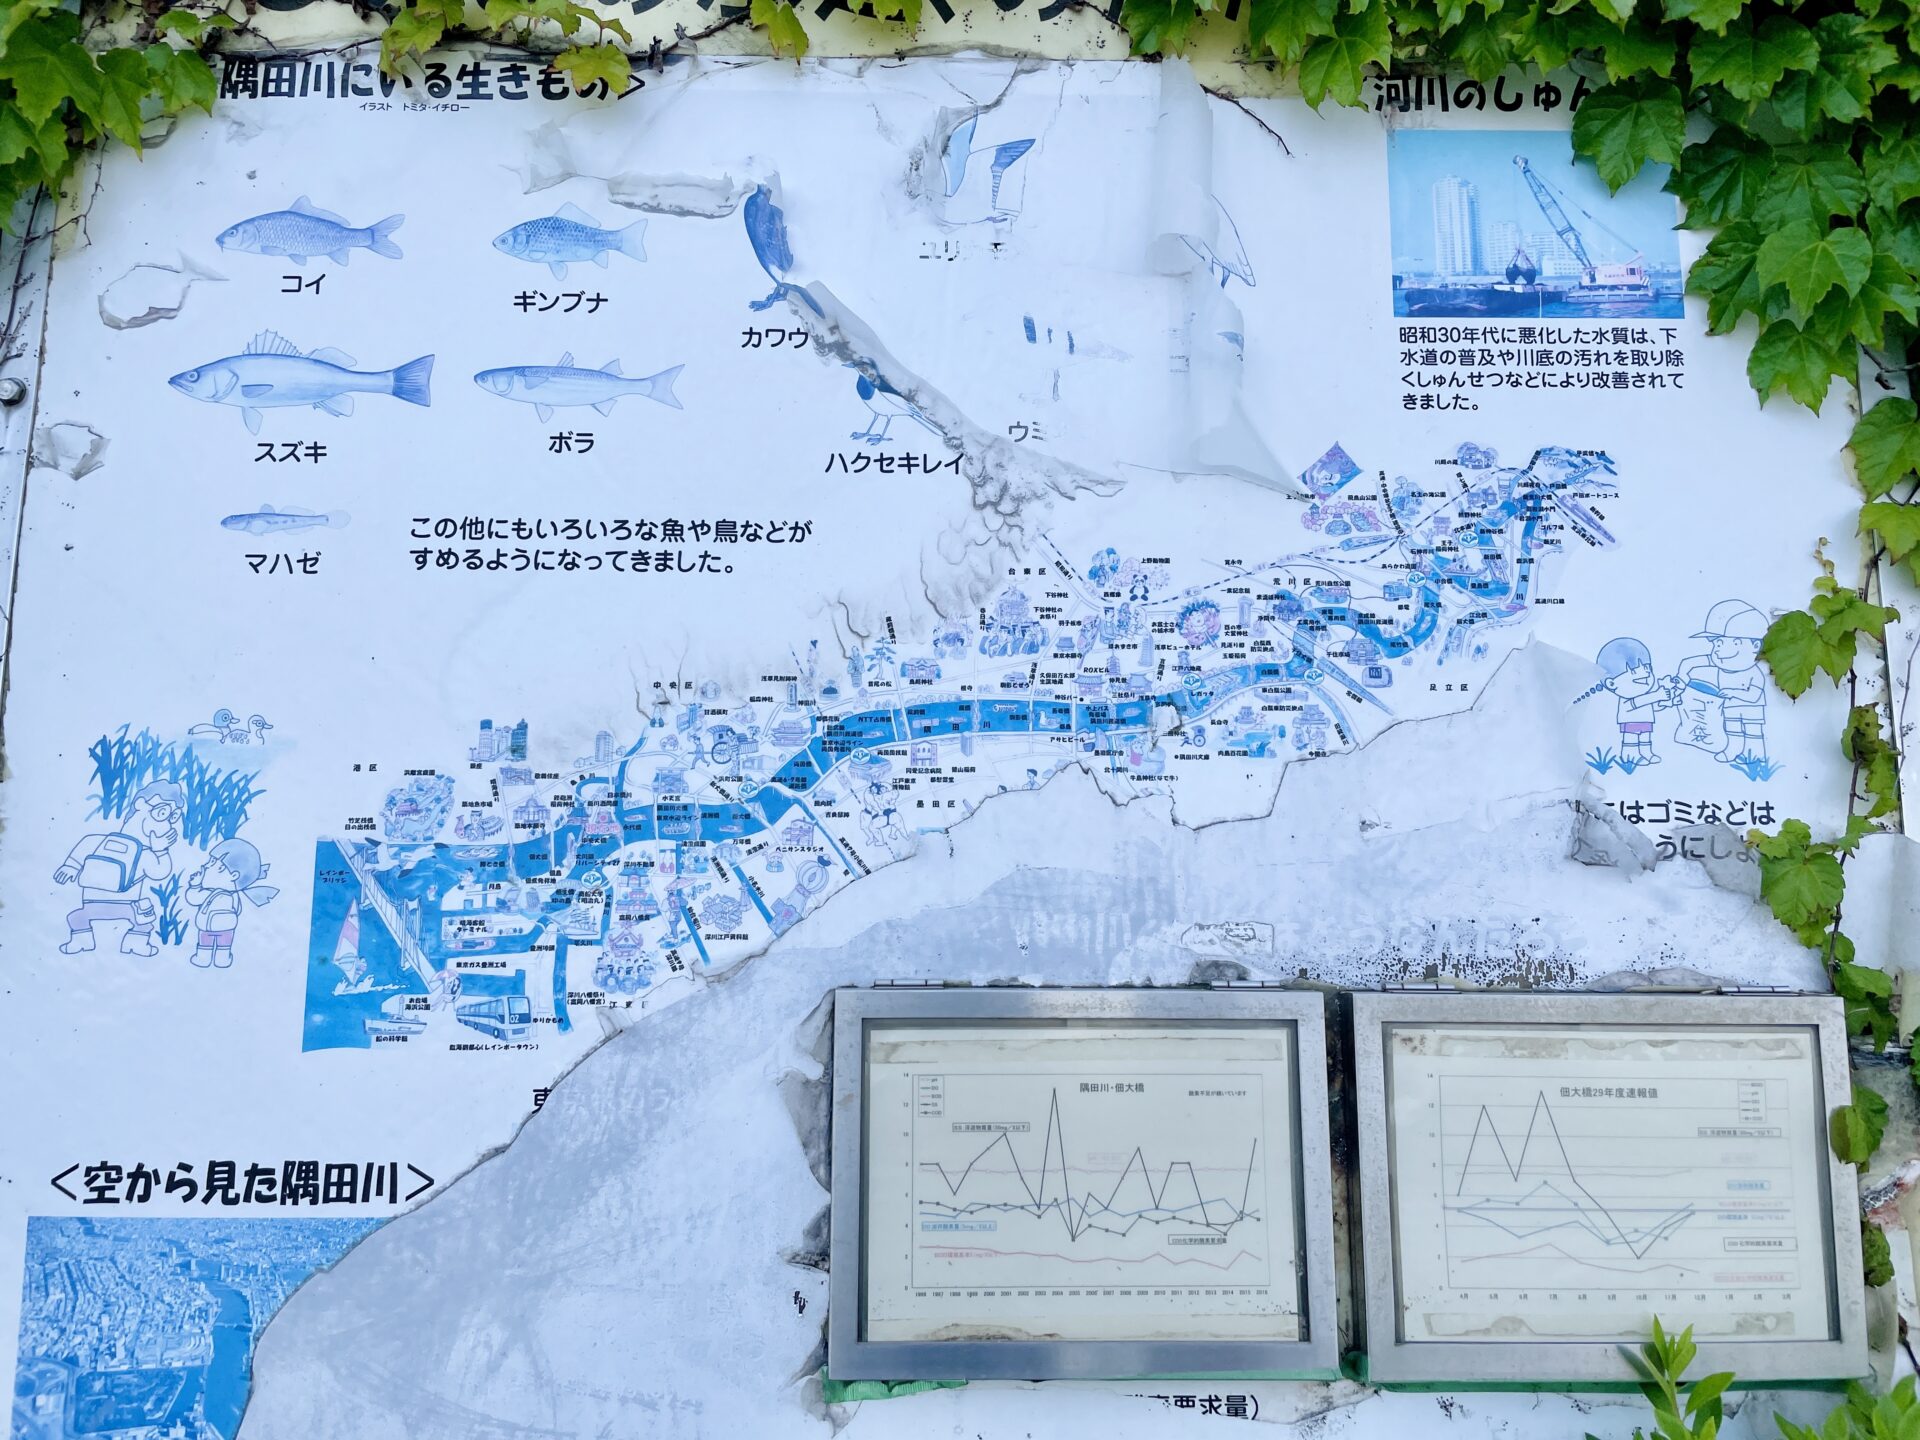 【隅田川ウォーキング】完全ガイド 川のはじまりから東京湾まで歩いてみた 隅田川MAP